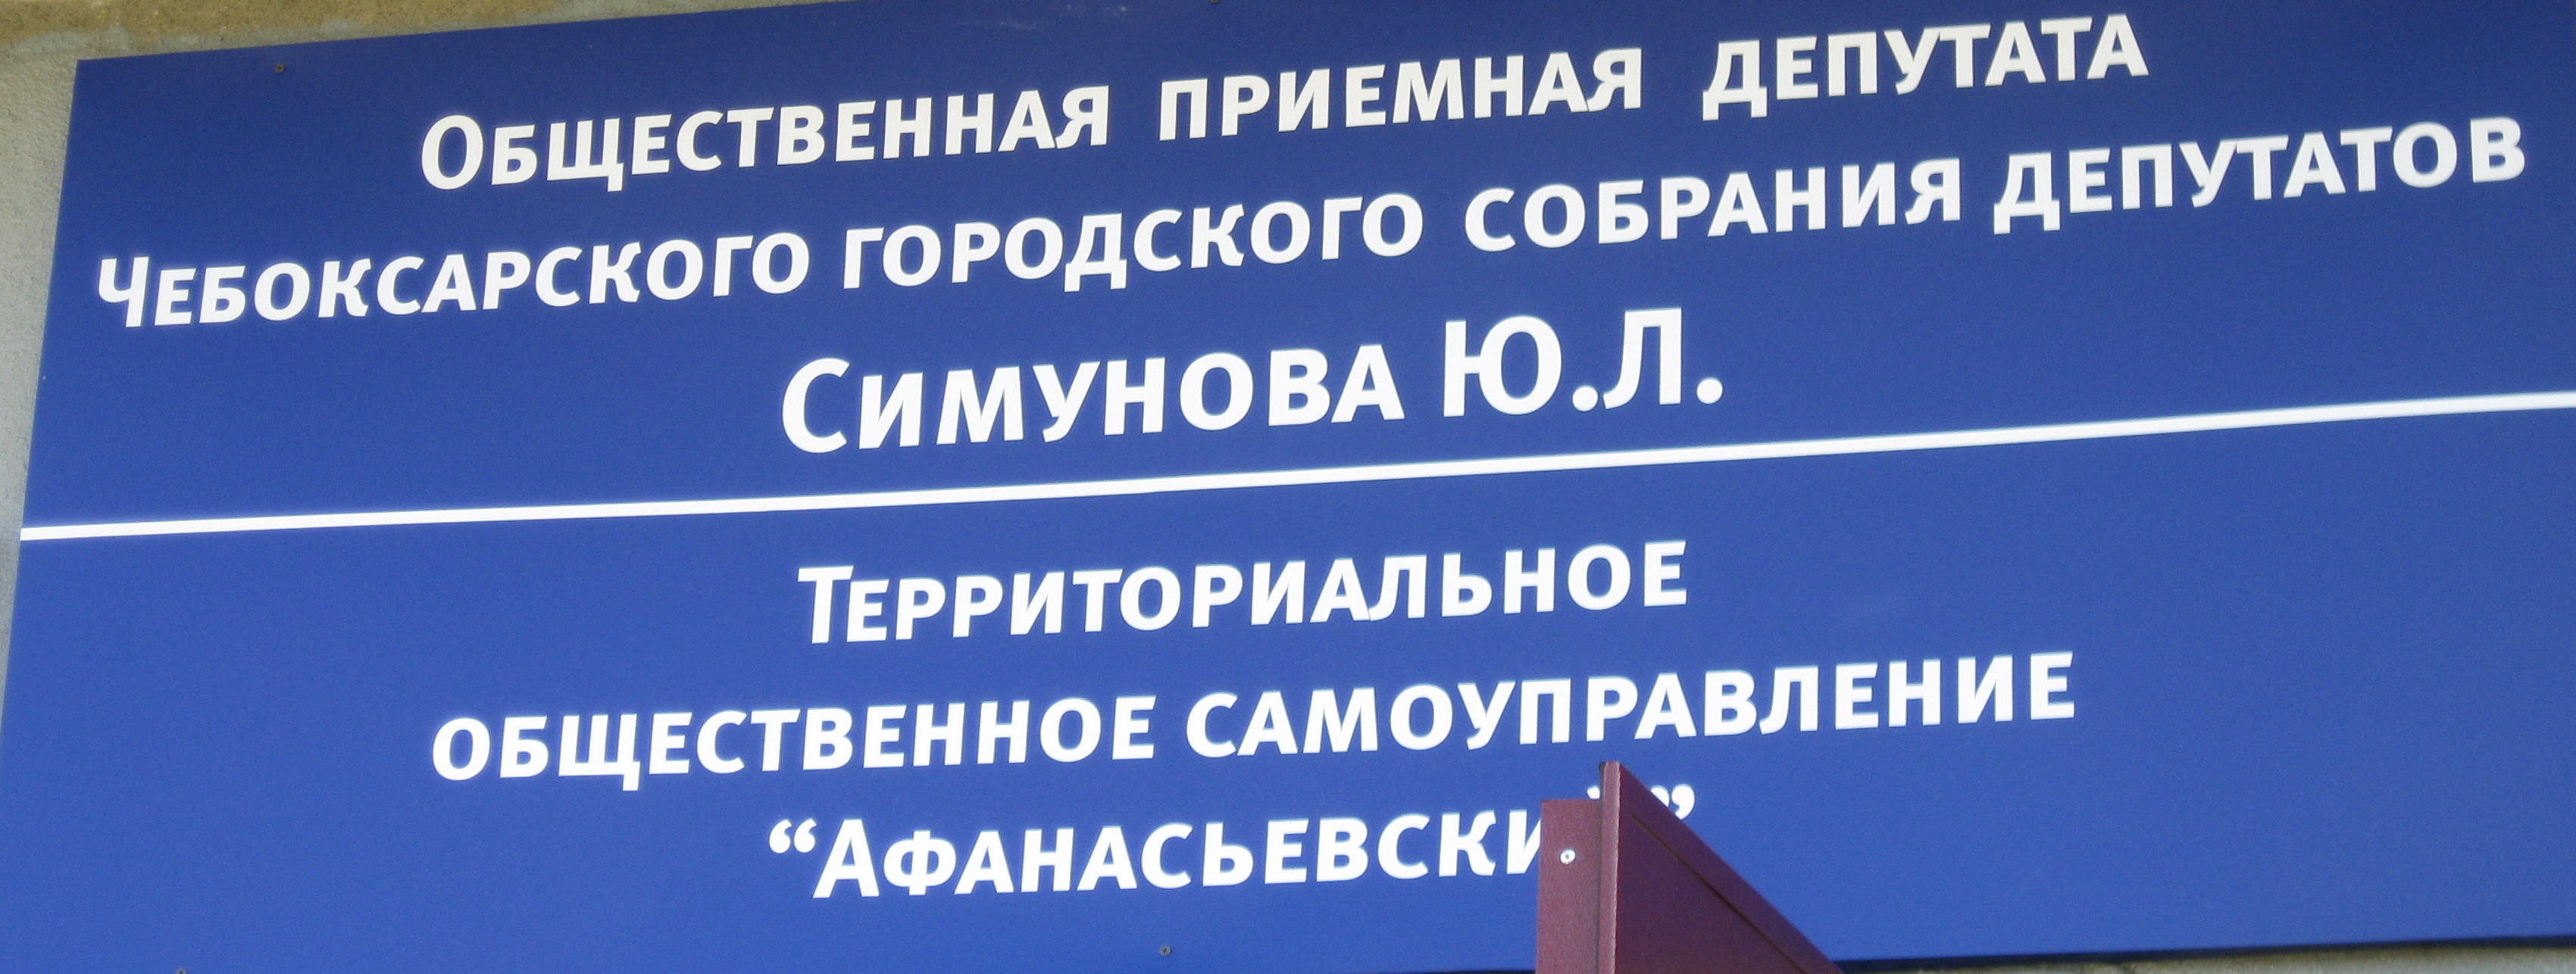 09:18 На базе офиса ТОС «Афанасьевский» открылась социальная приемная